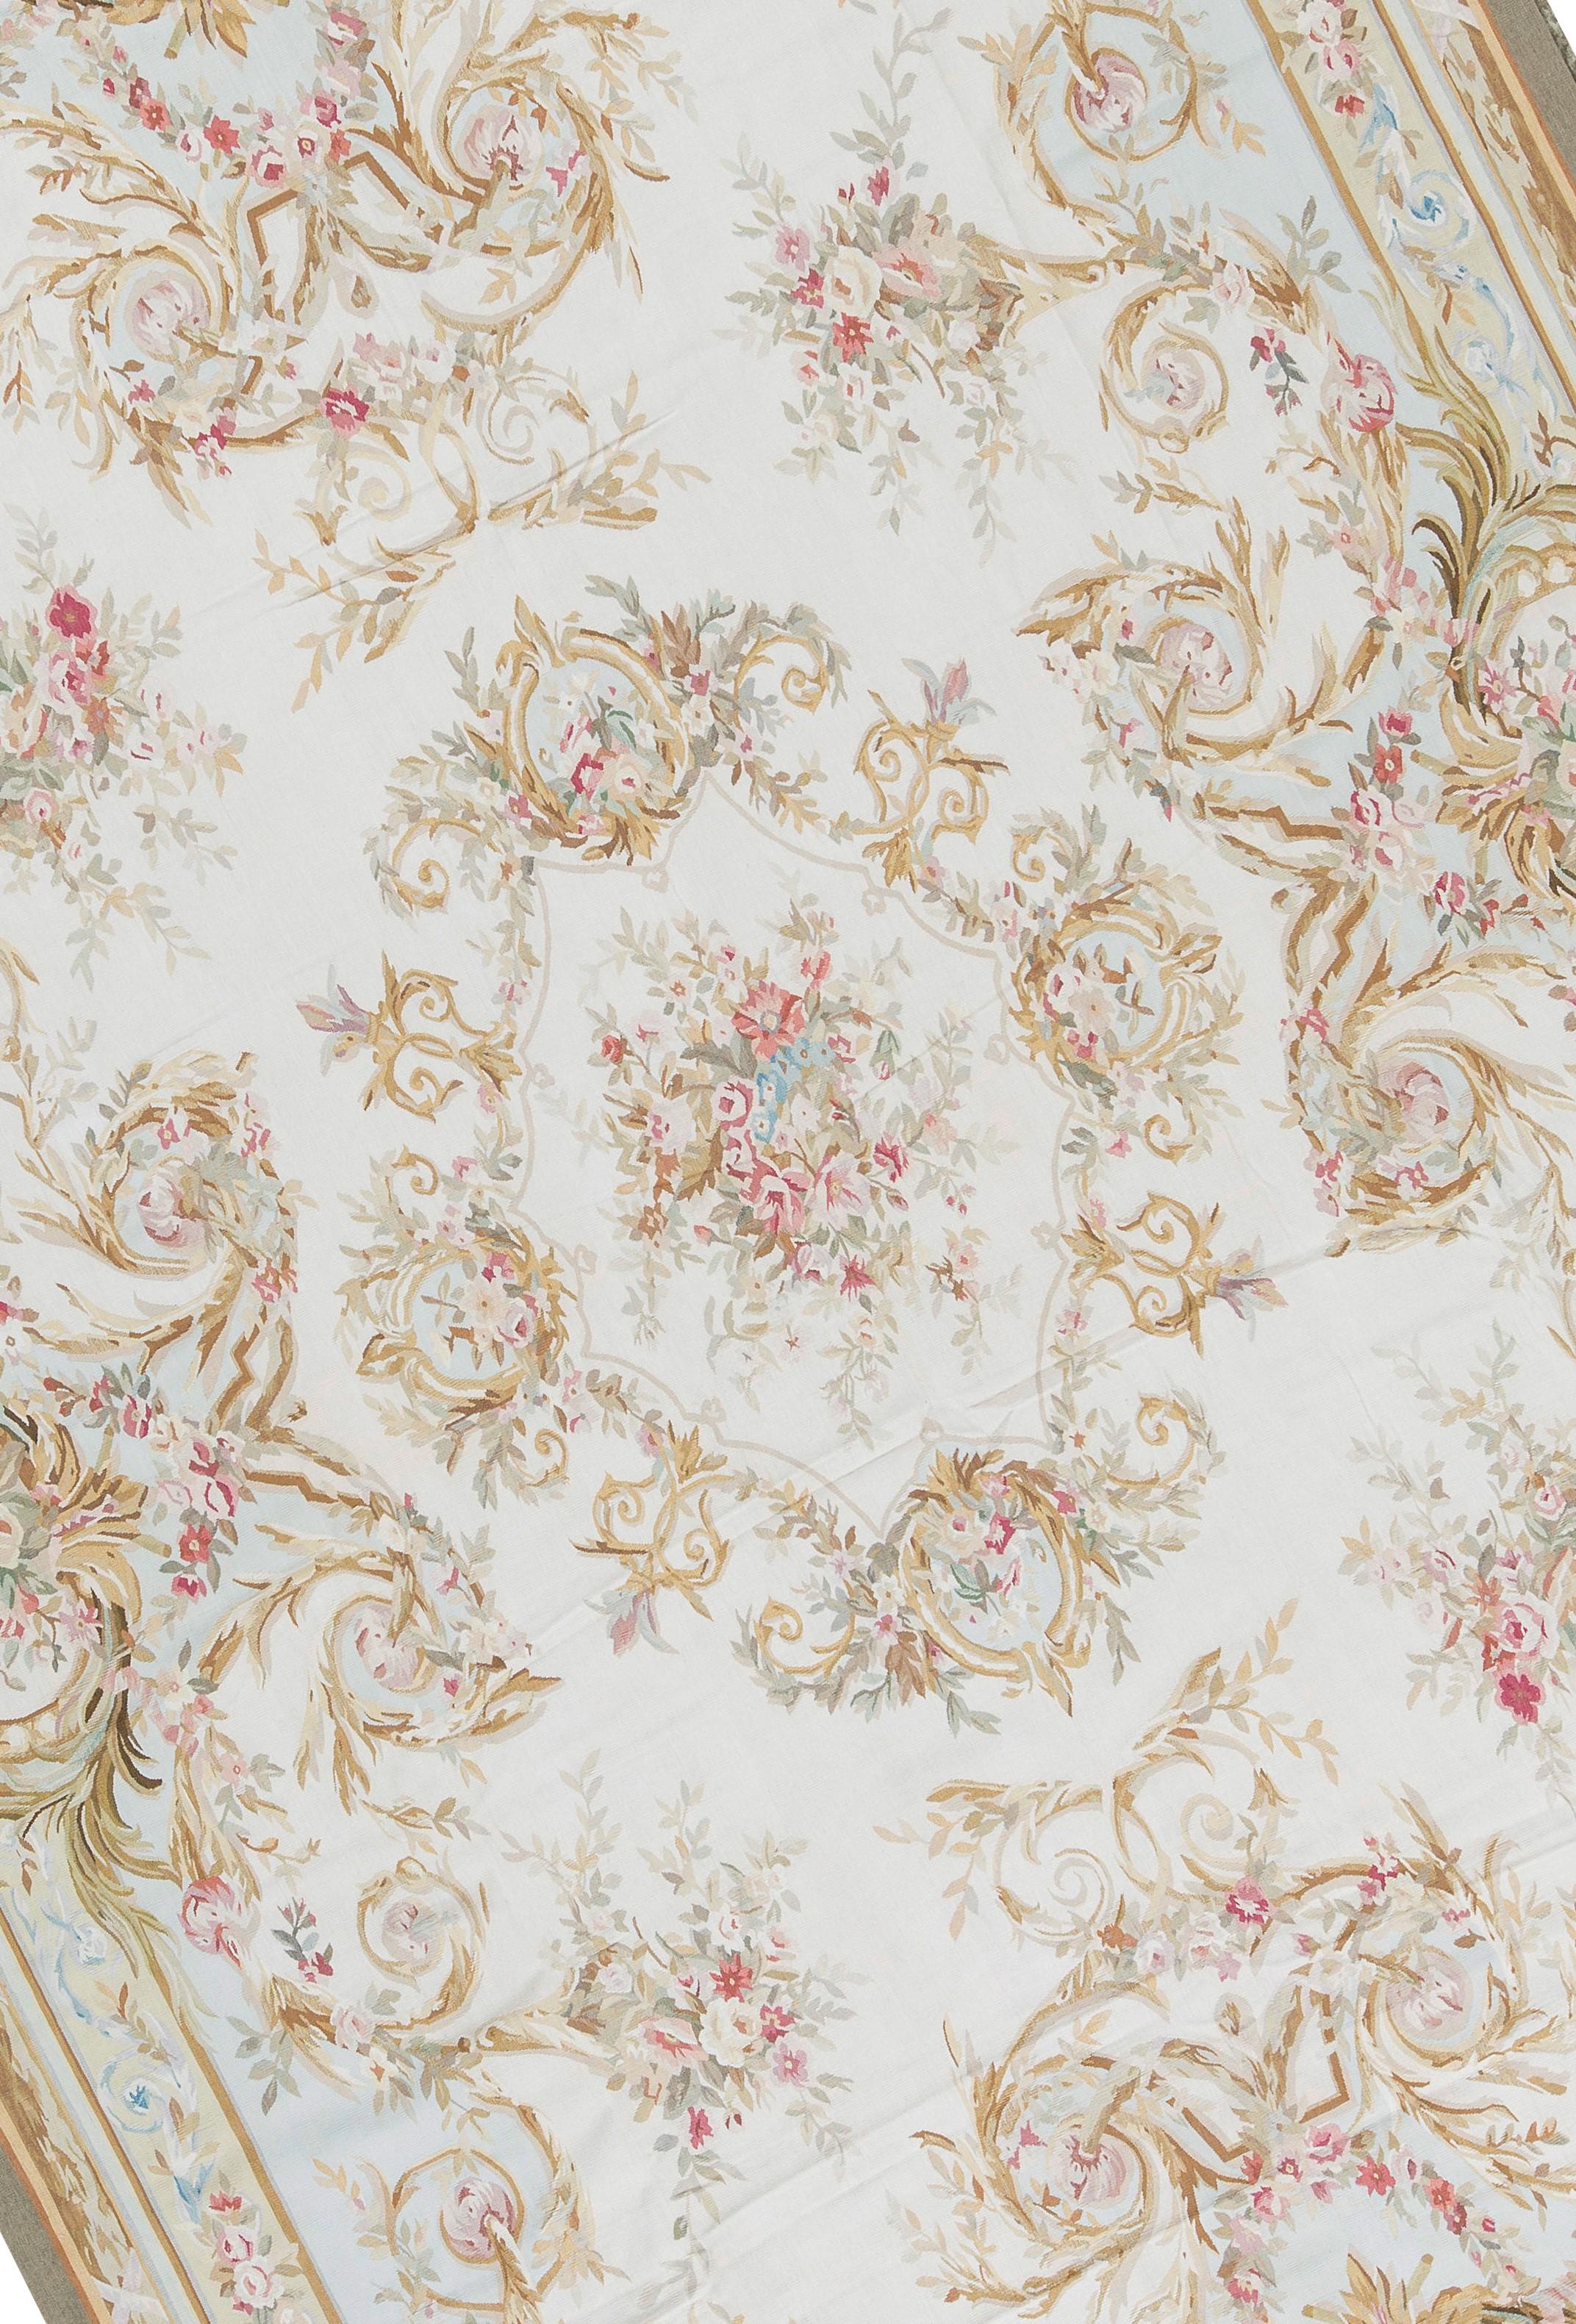 Récréation tissée à la main des tapis d'Aubusson classiques français à tissage plat que l'on trouve dans les maisons et les palais les plus raffinés depuis la fin du XVIIe siècle. Taille : 11' 1'' x 16' 3''.